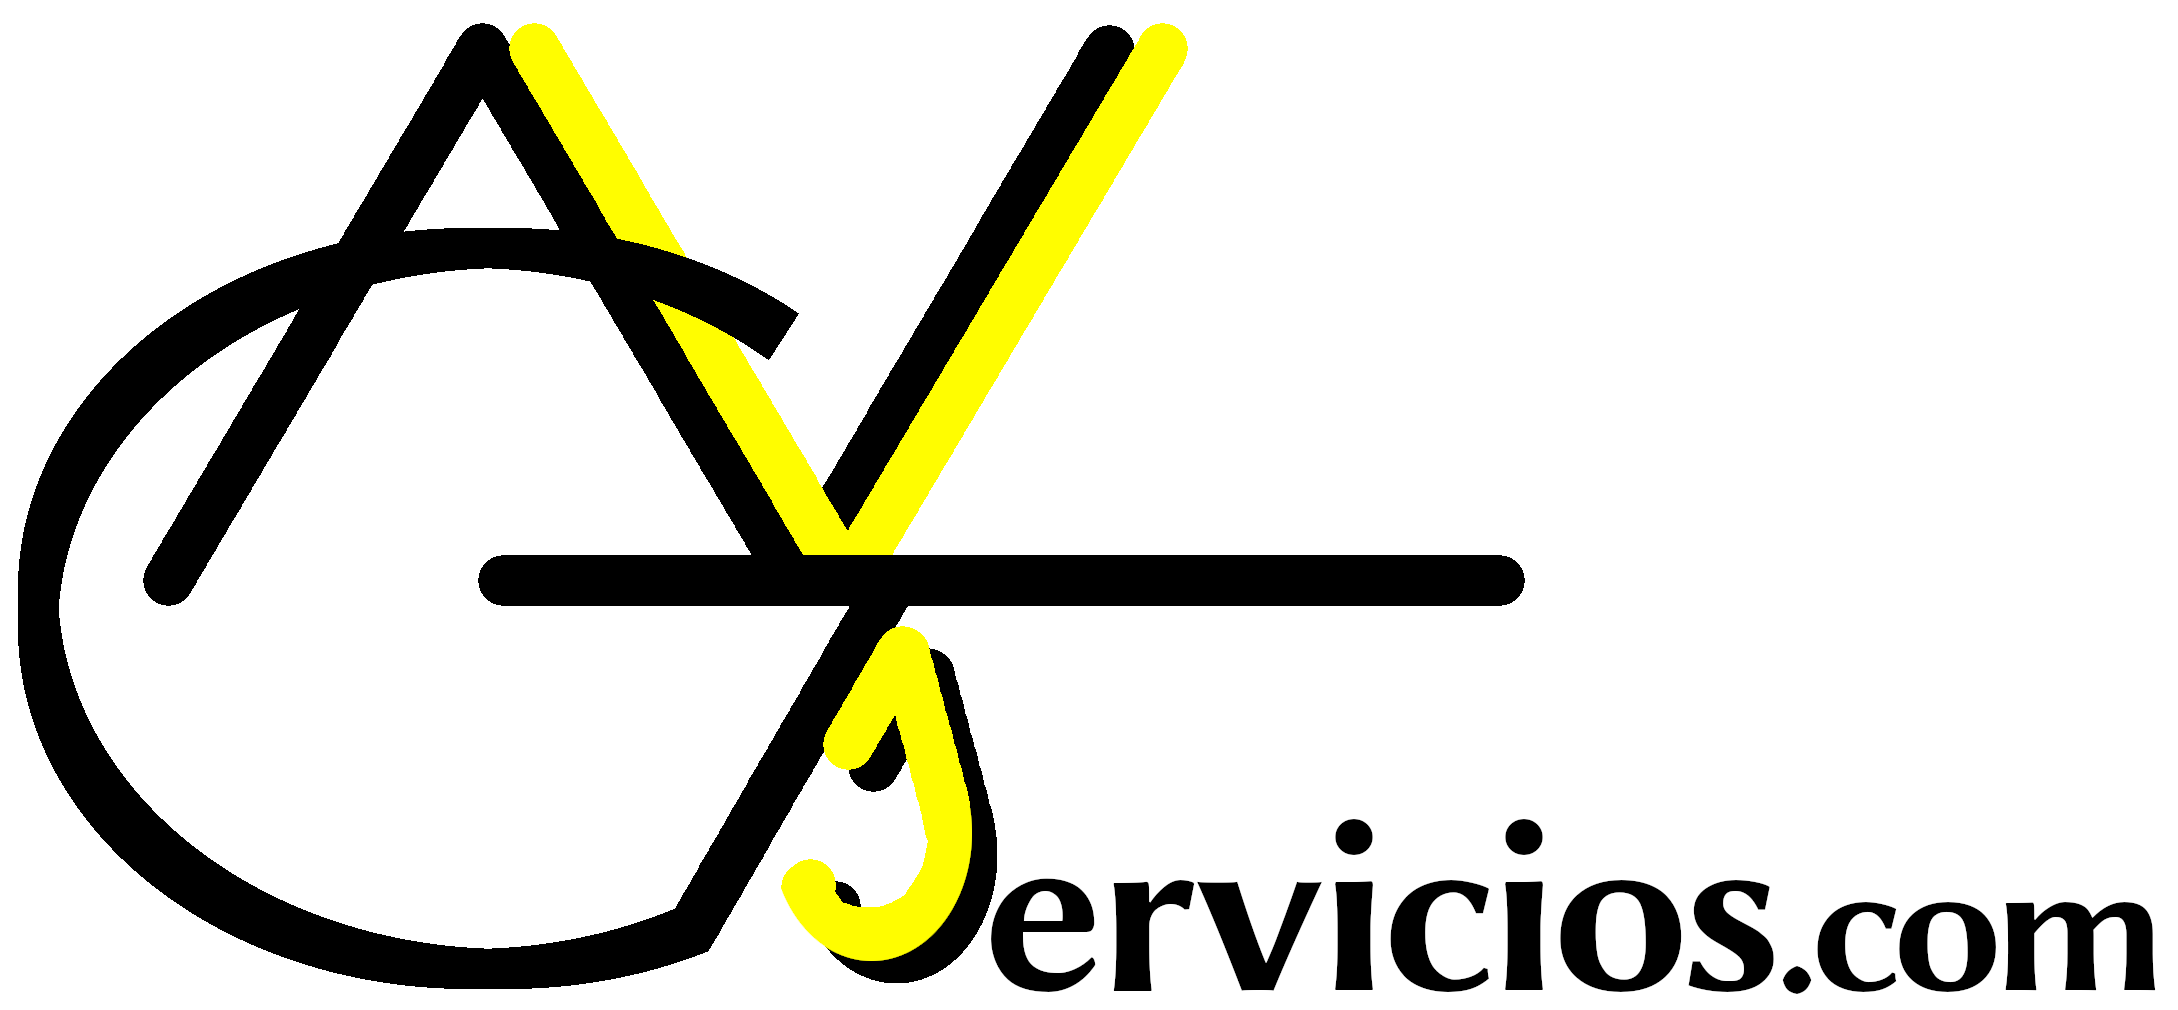 Imagen del Logotipo reducido de AVGservicios.com